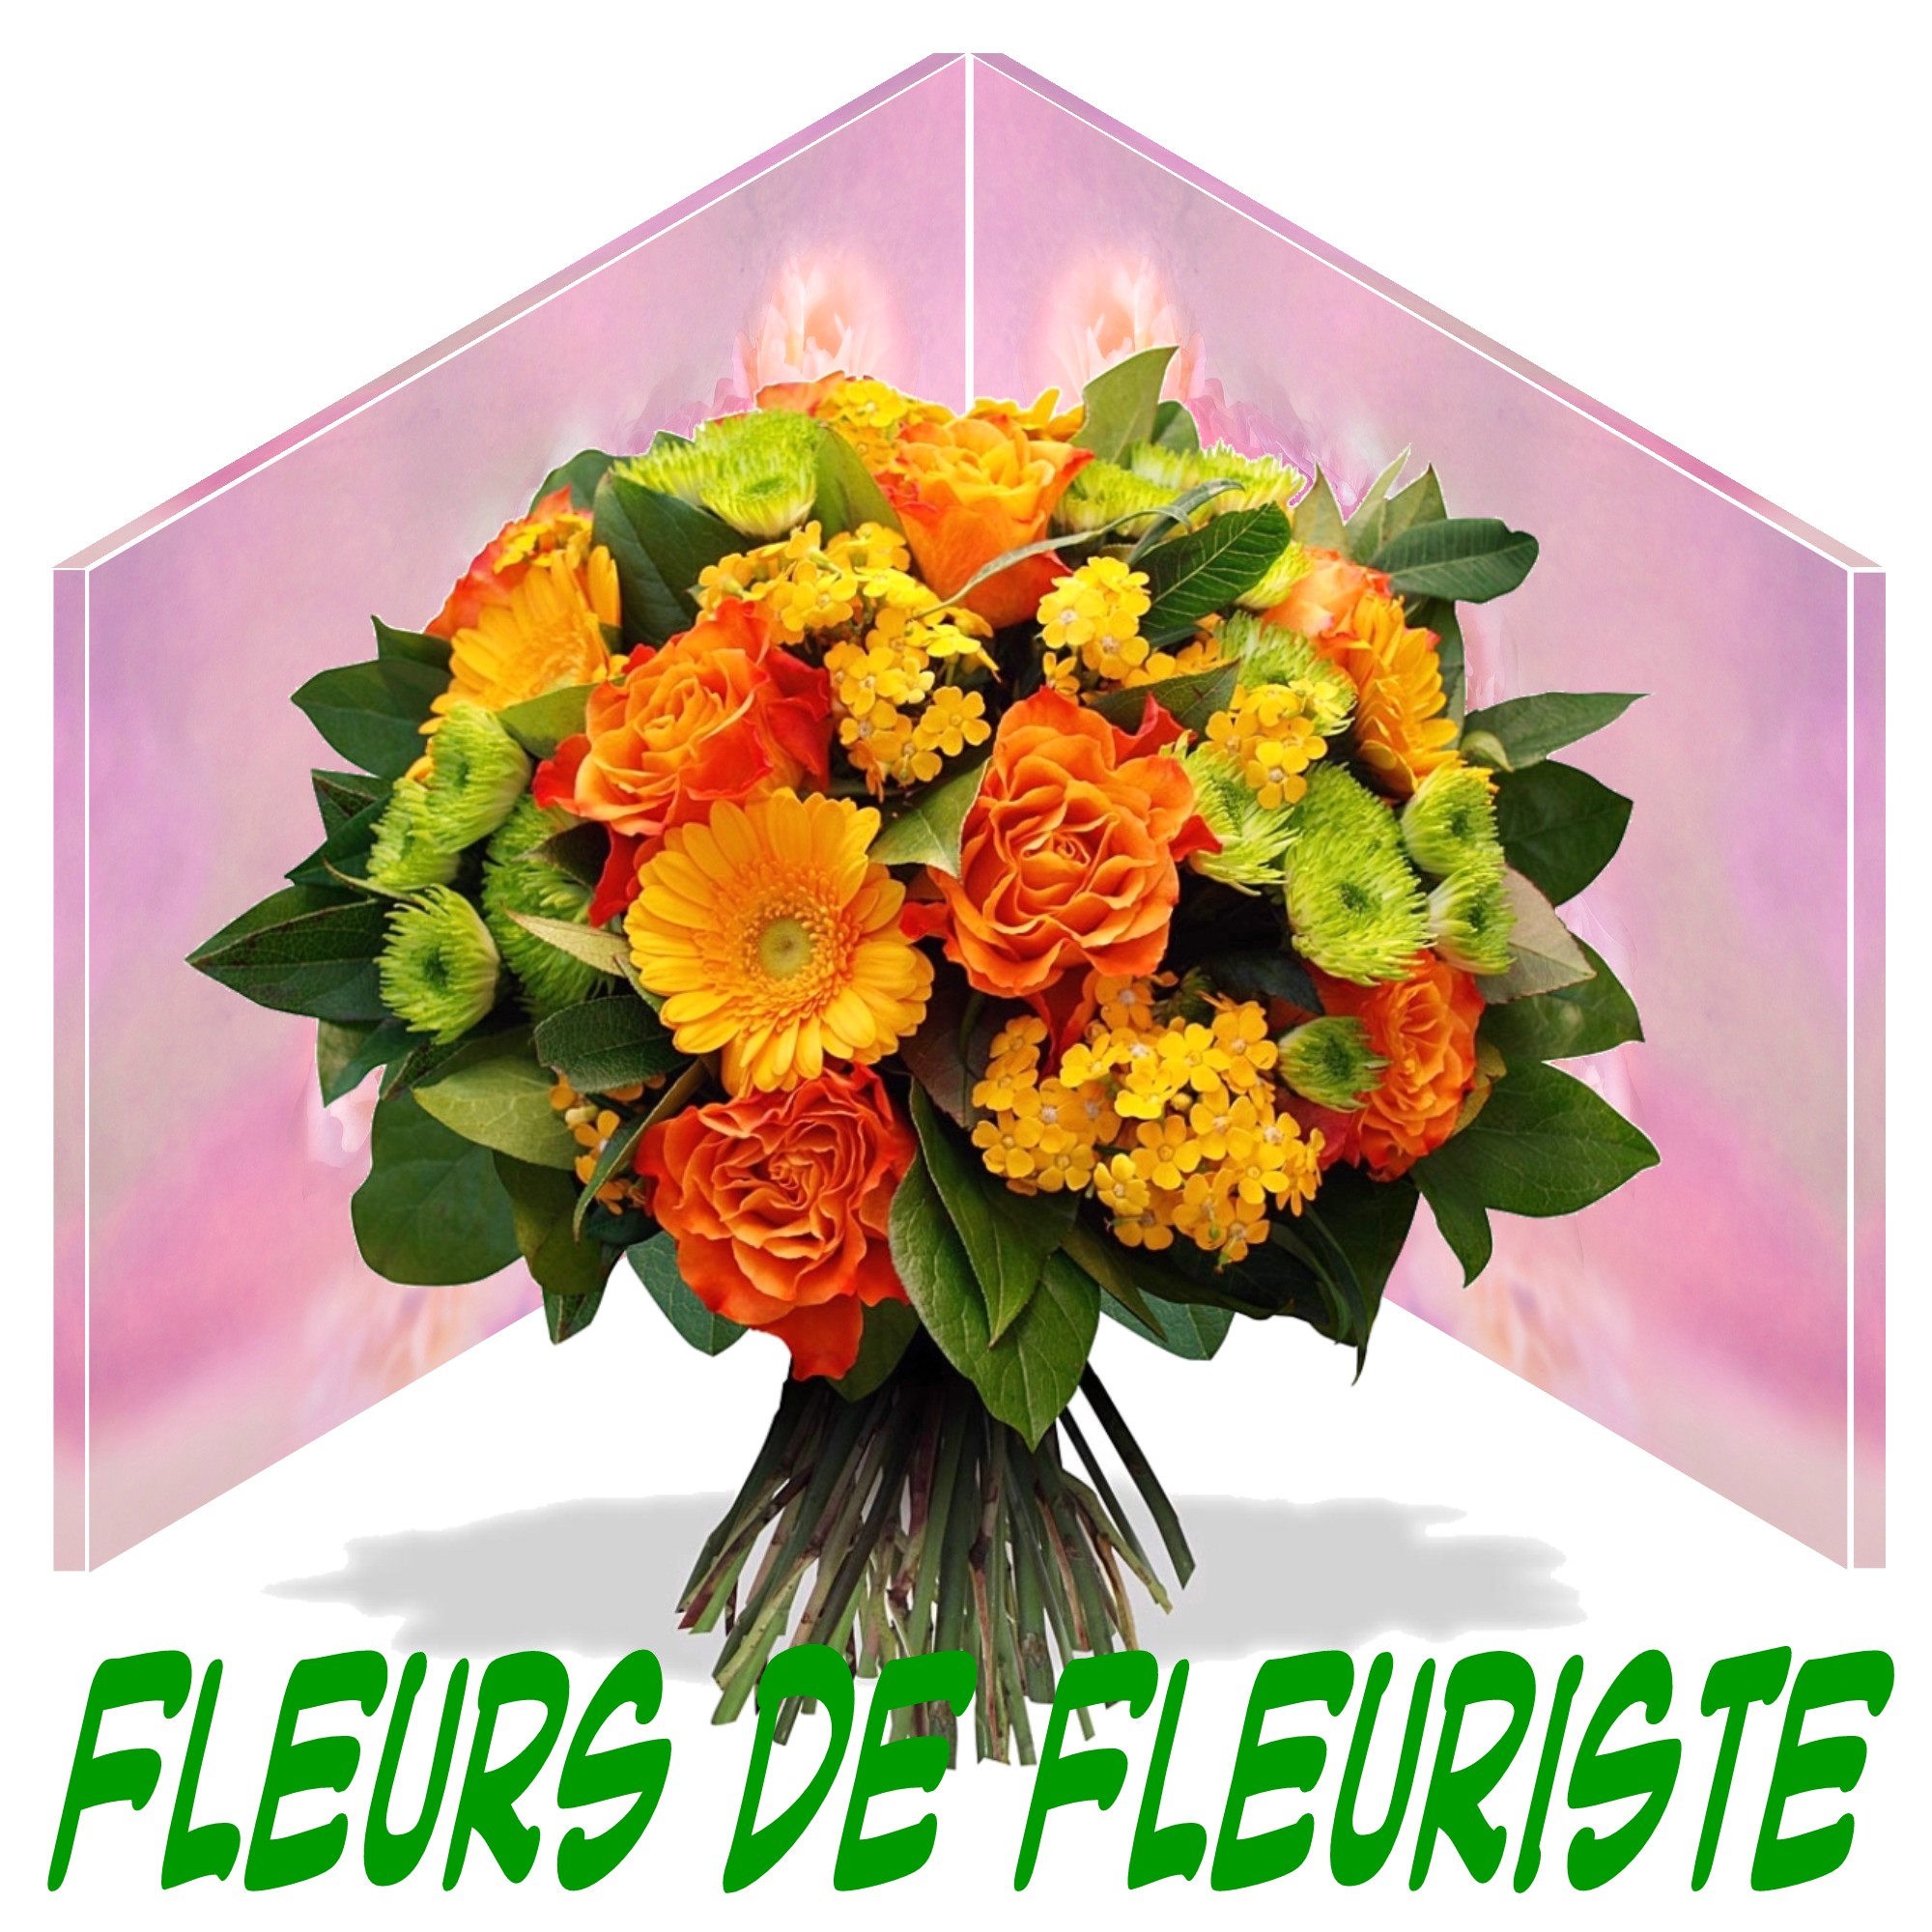 FLEURS ANNIVERSAIRE - Livraison fleurs anniversaire